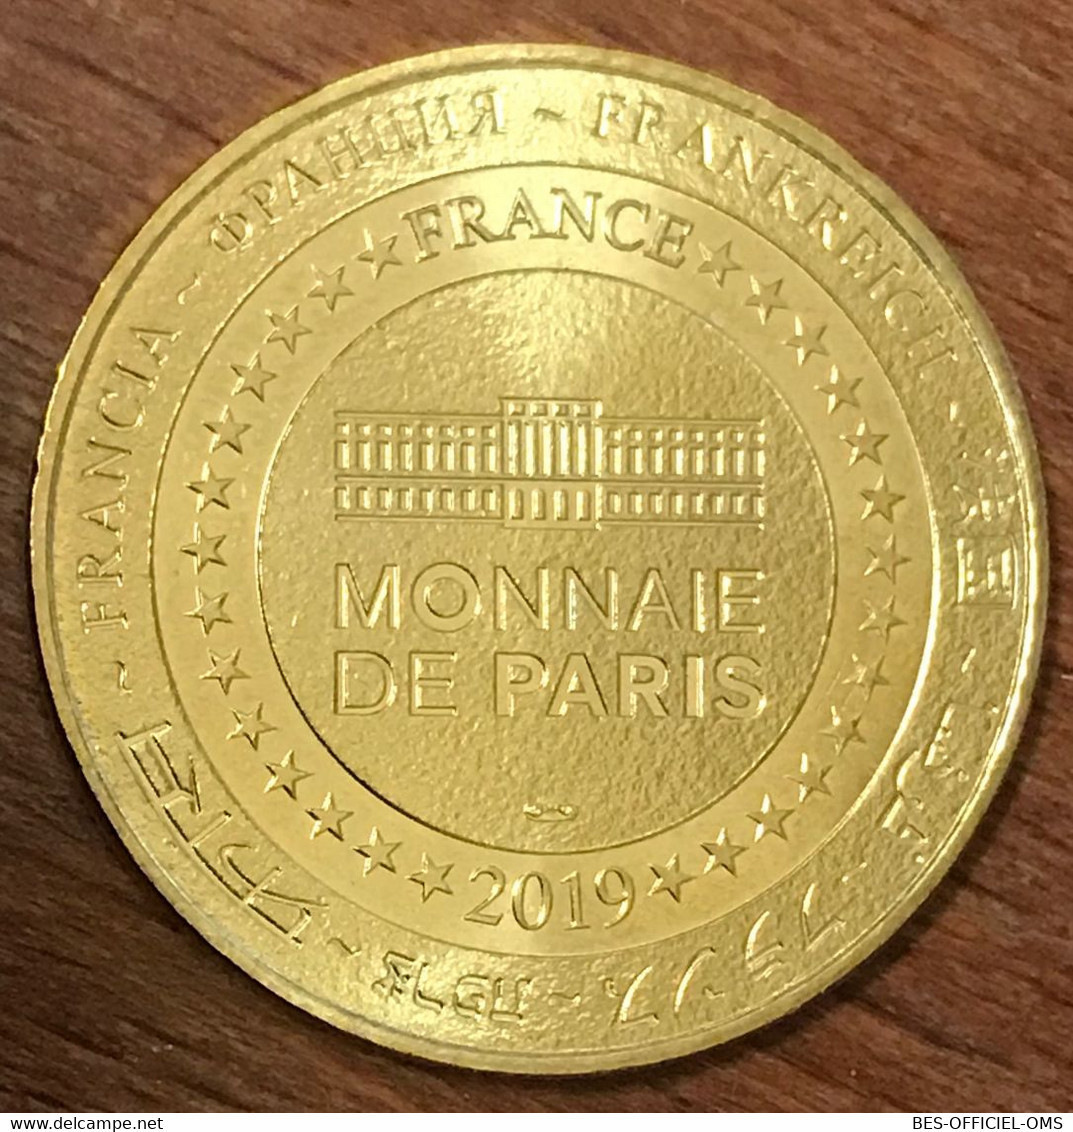 63 MONT DORE PUY DE SANCY SOURCES DE LA DORDOGNE MDP 2019 MÉDAILLE MONNAIE DE PARIS JETON TOURISTIQUE MEDALS COIN TOKENS - 2019